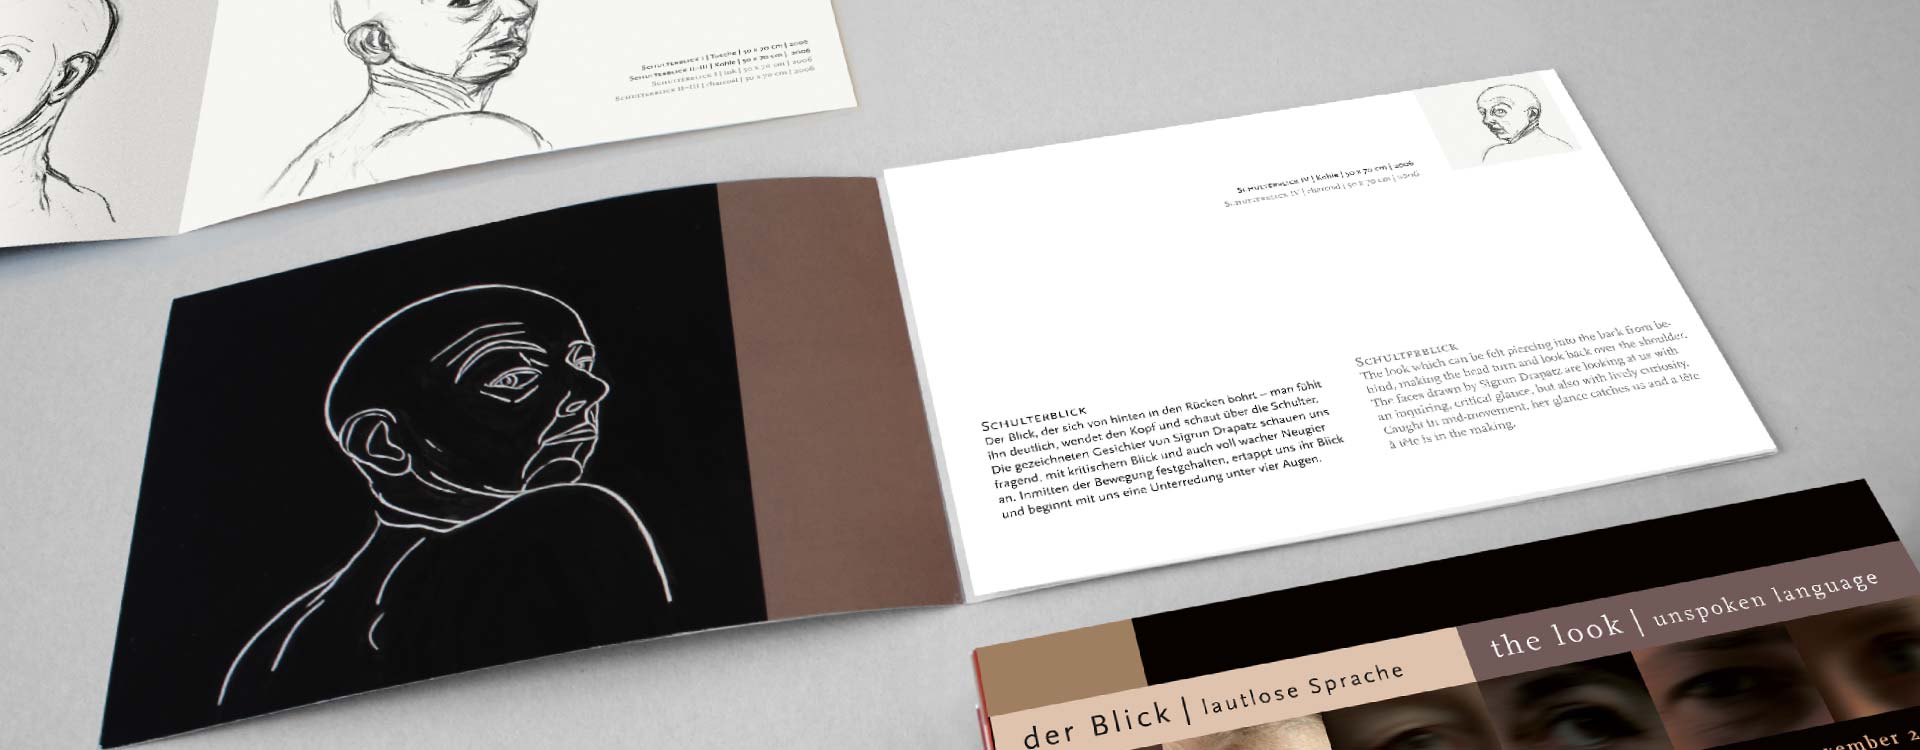 Leaflet about the work of Sigrun Drapatz in the exhibition Der Blick; Design: Kattrin Richter | Graphic Design Studio